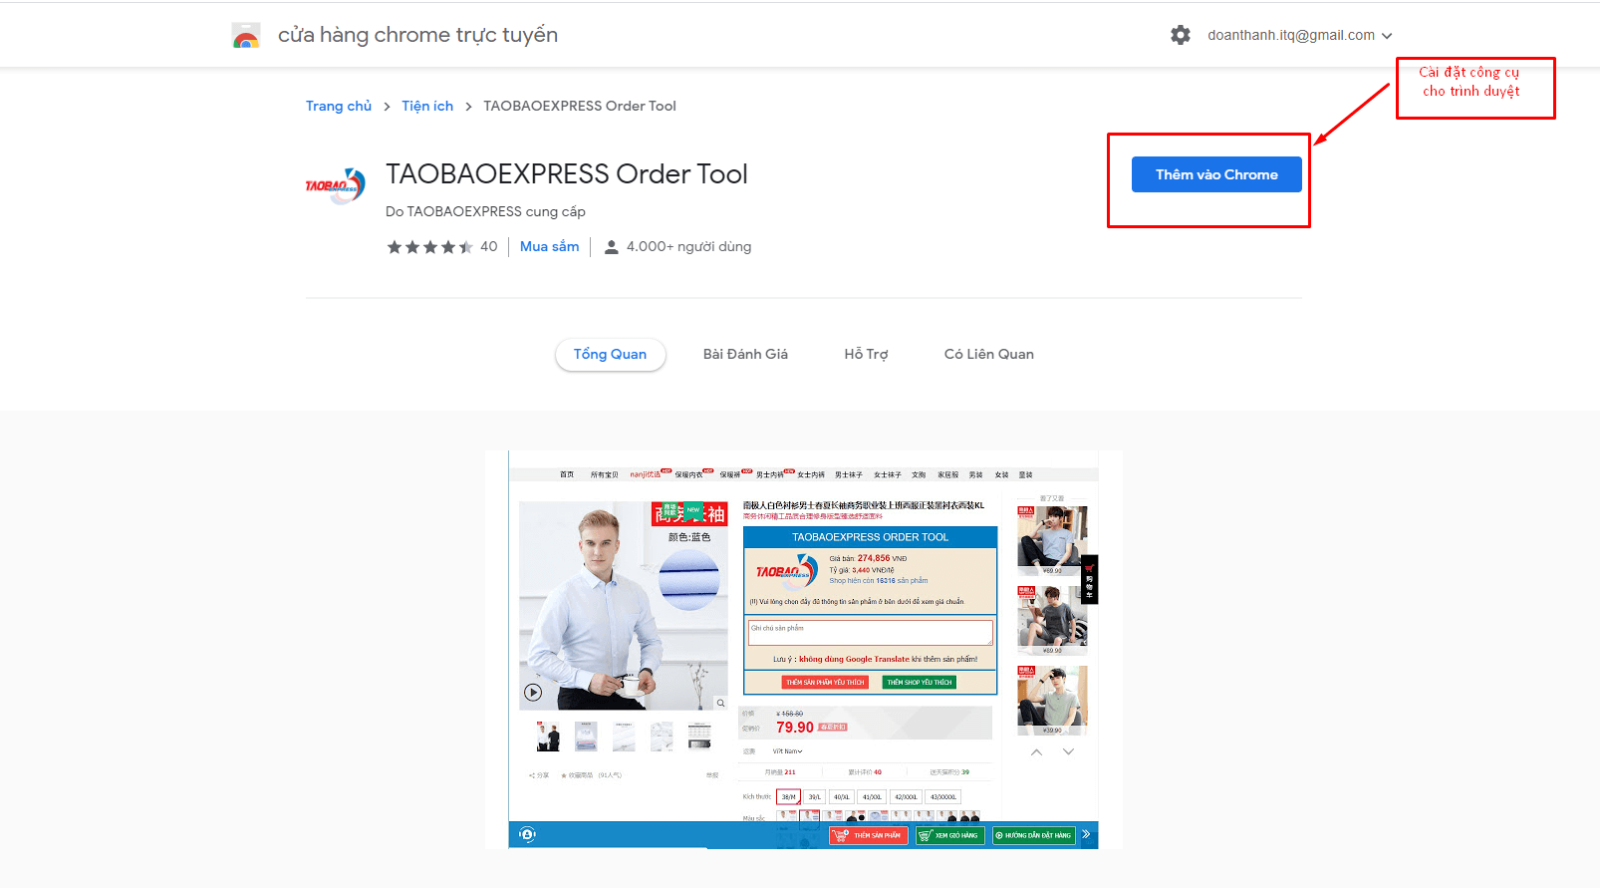 Taobao Express Order Tool